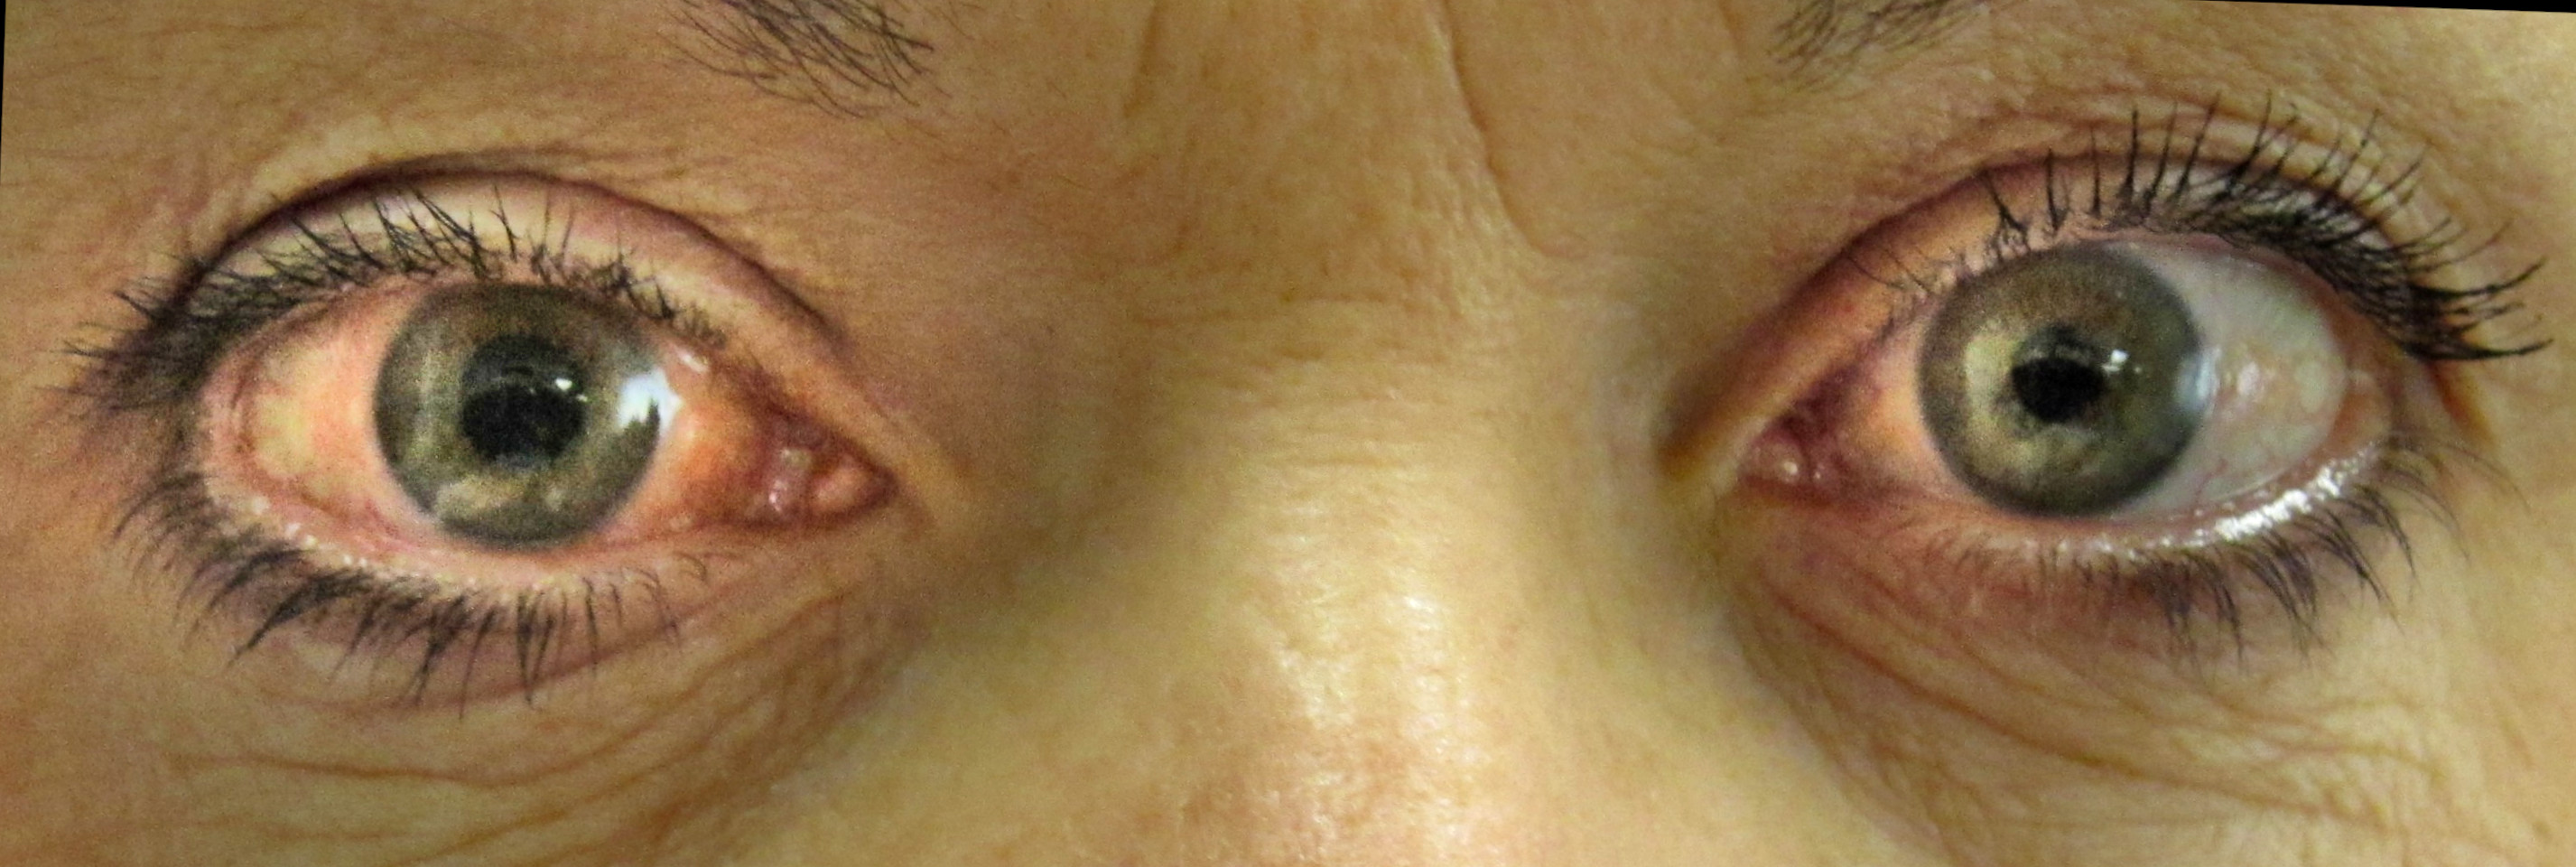 视网膜疾病检测